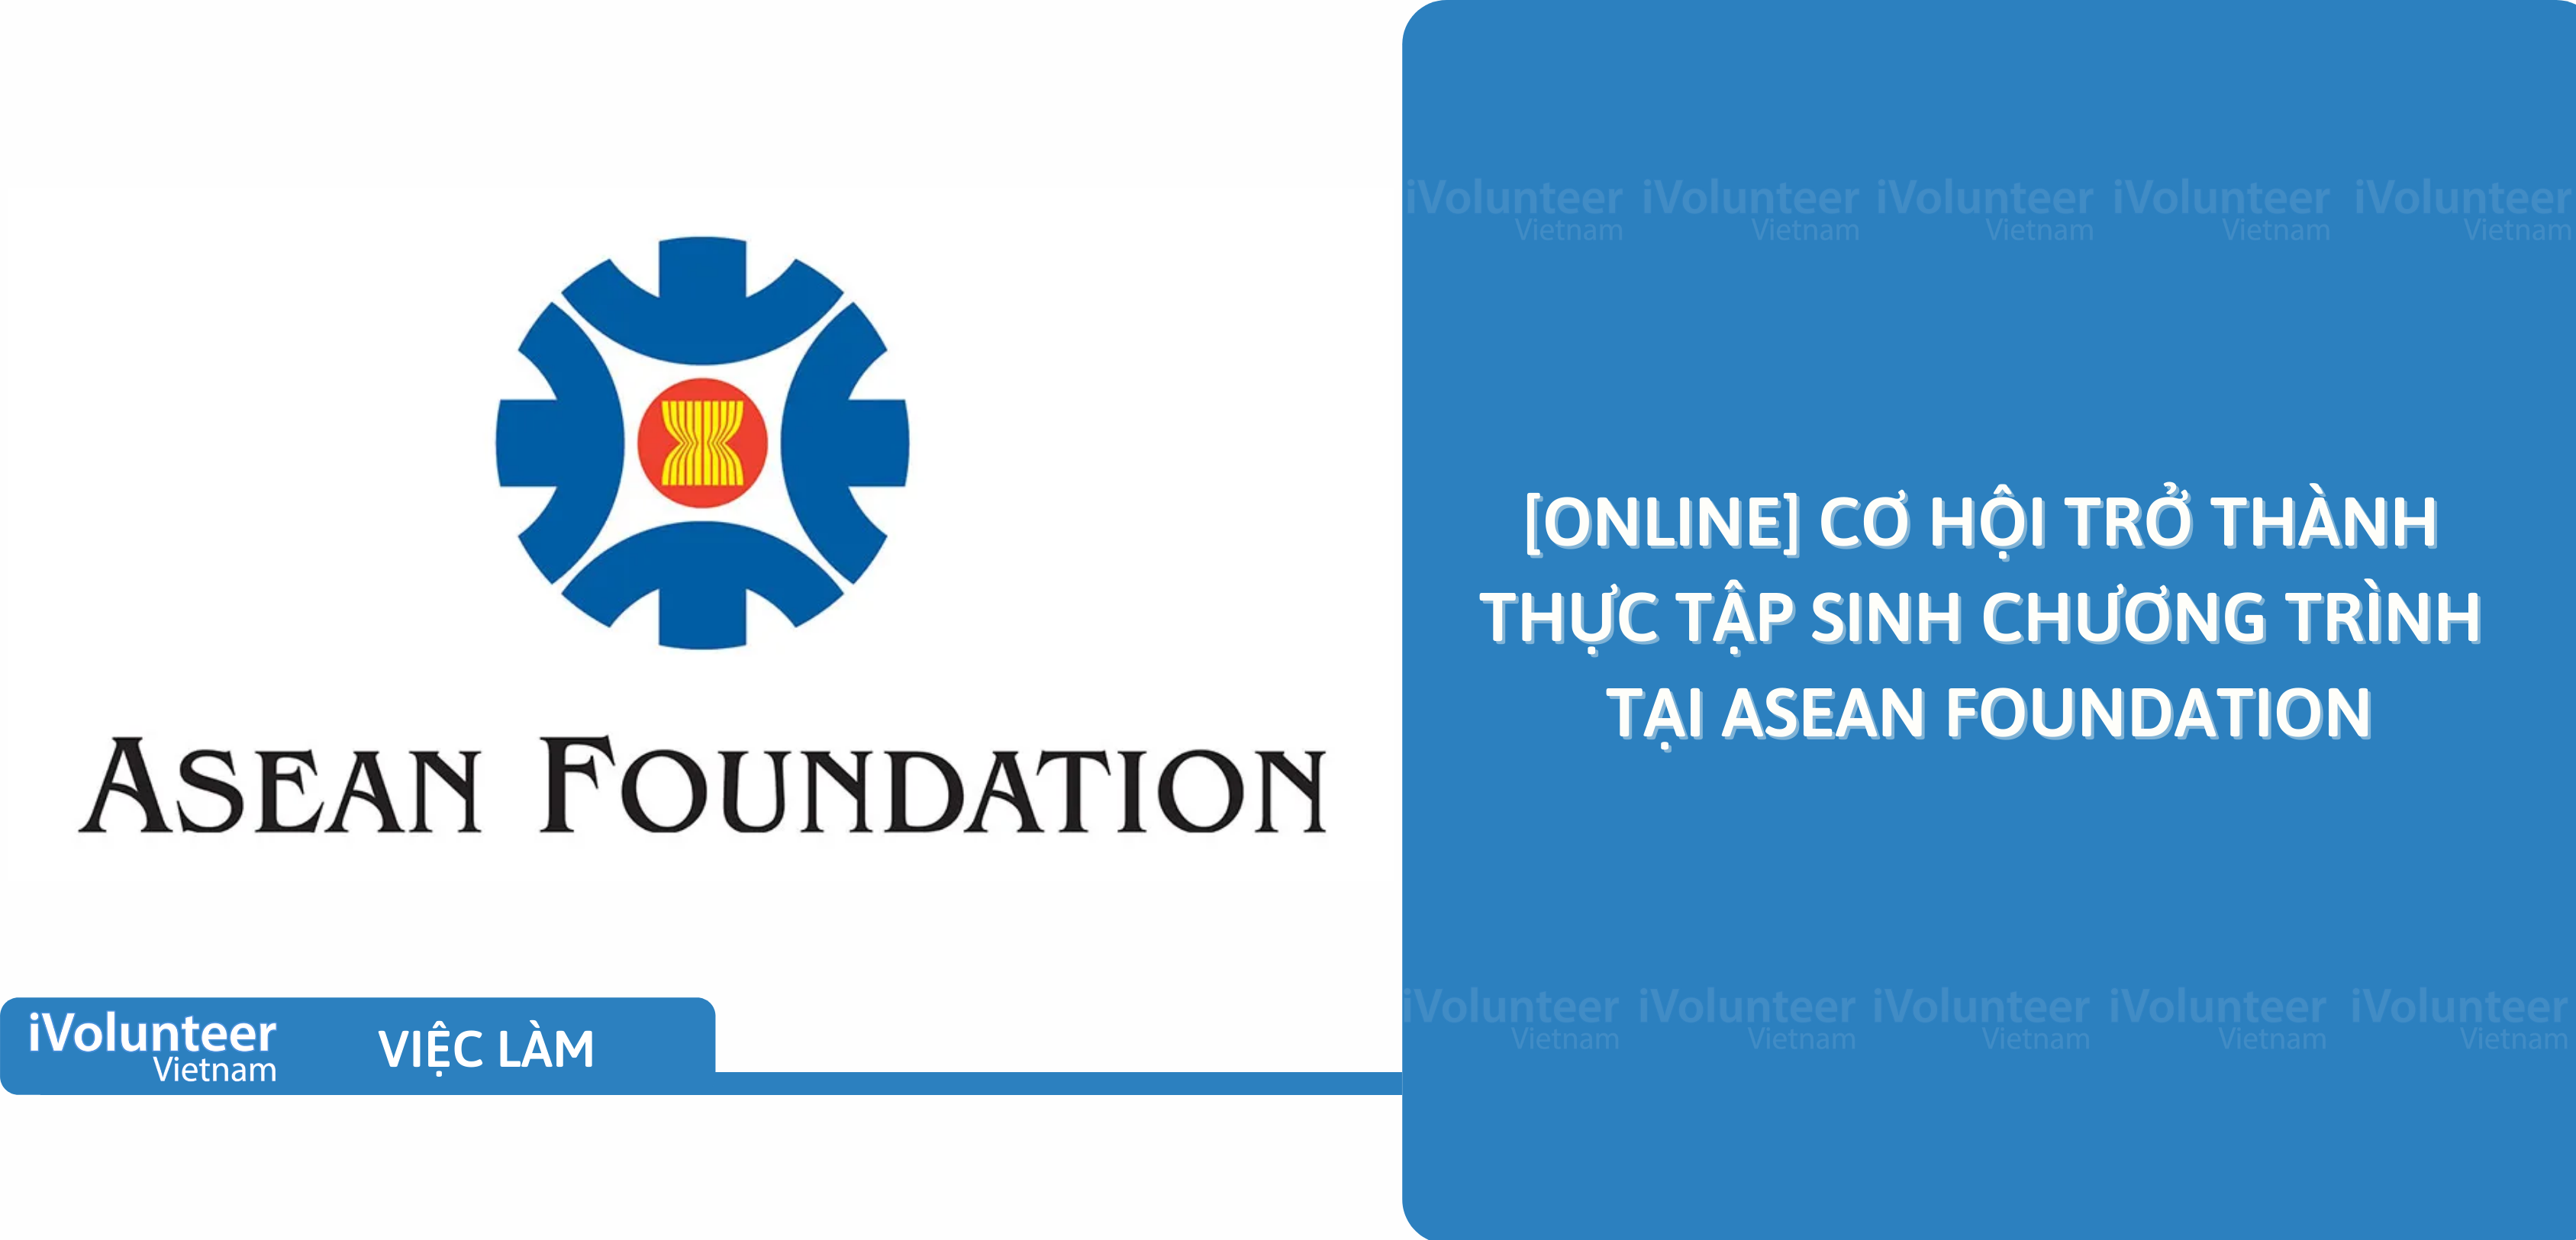 [Online] Cơ Hội Trở Thành Thực Tập Sinh Chương Trình Tại Asean Foundation